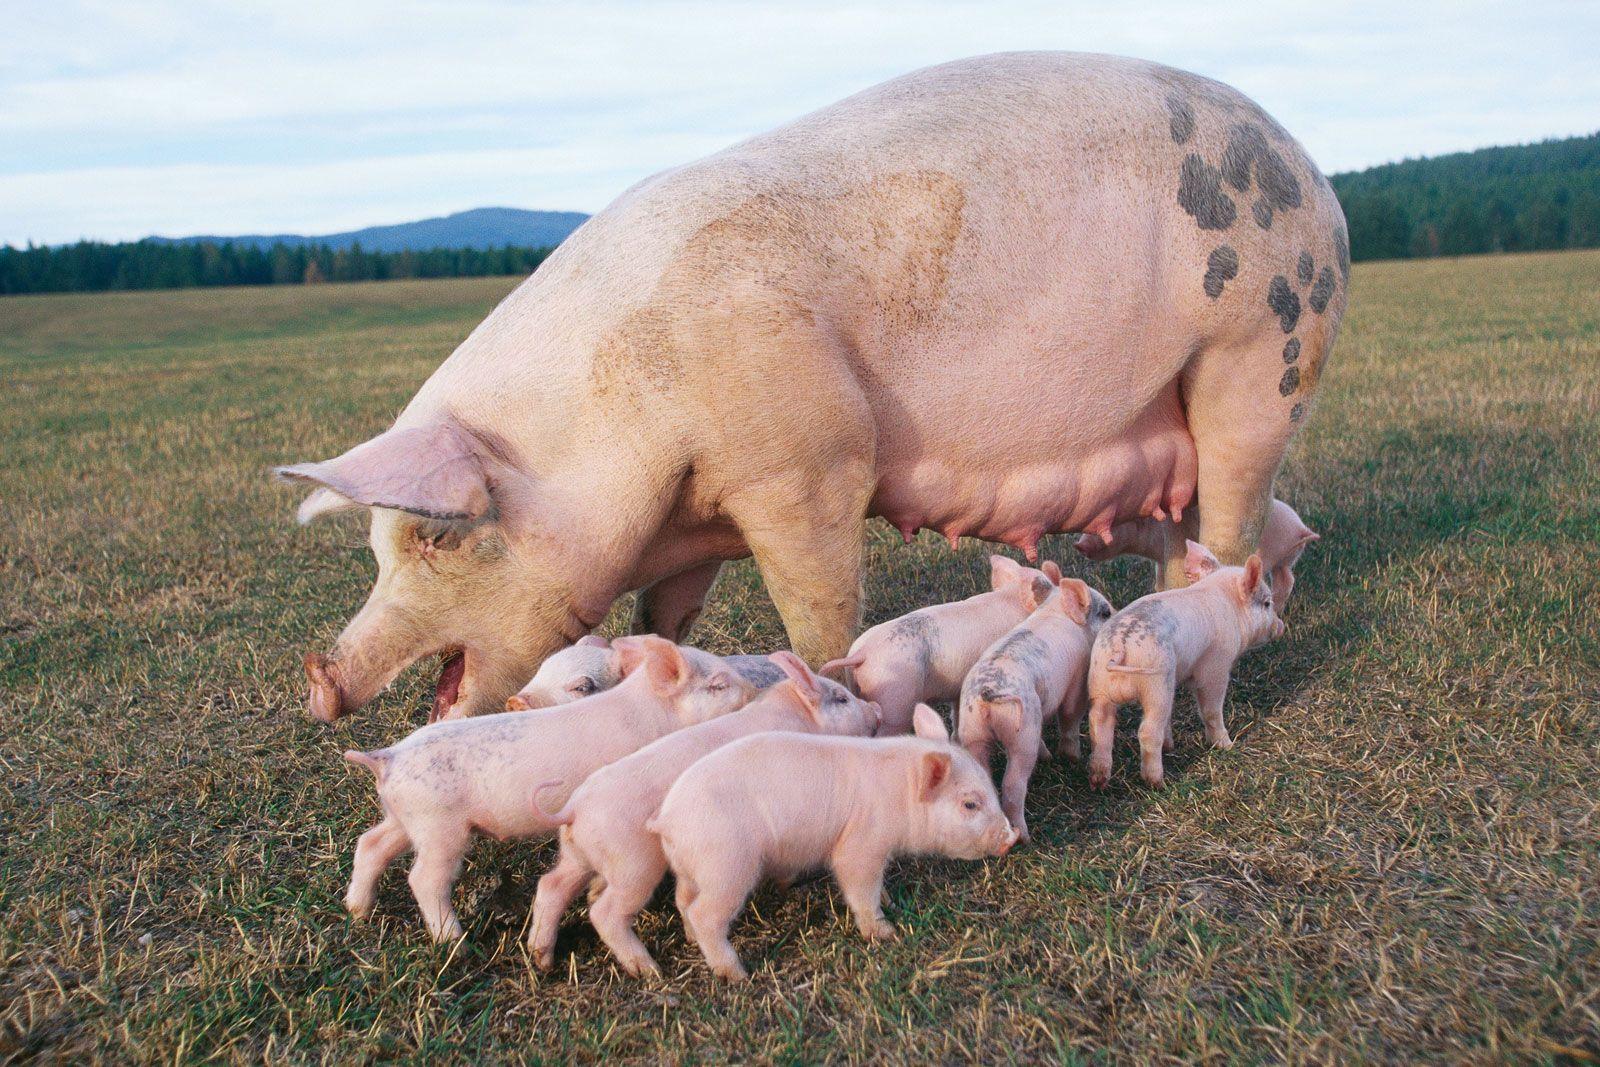 Yes, I grew up raising PIGS. Farming. Pig wallpaper